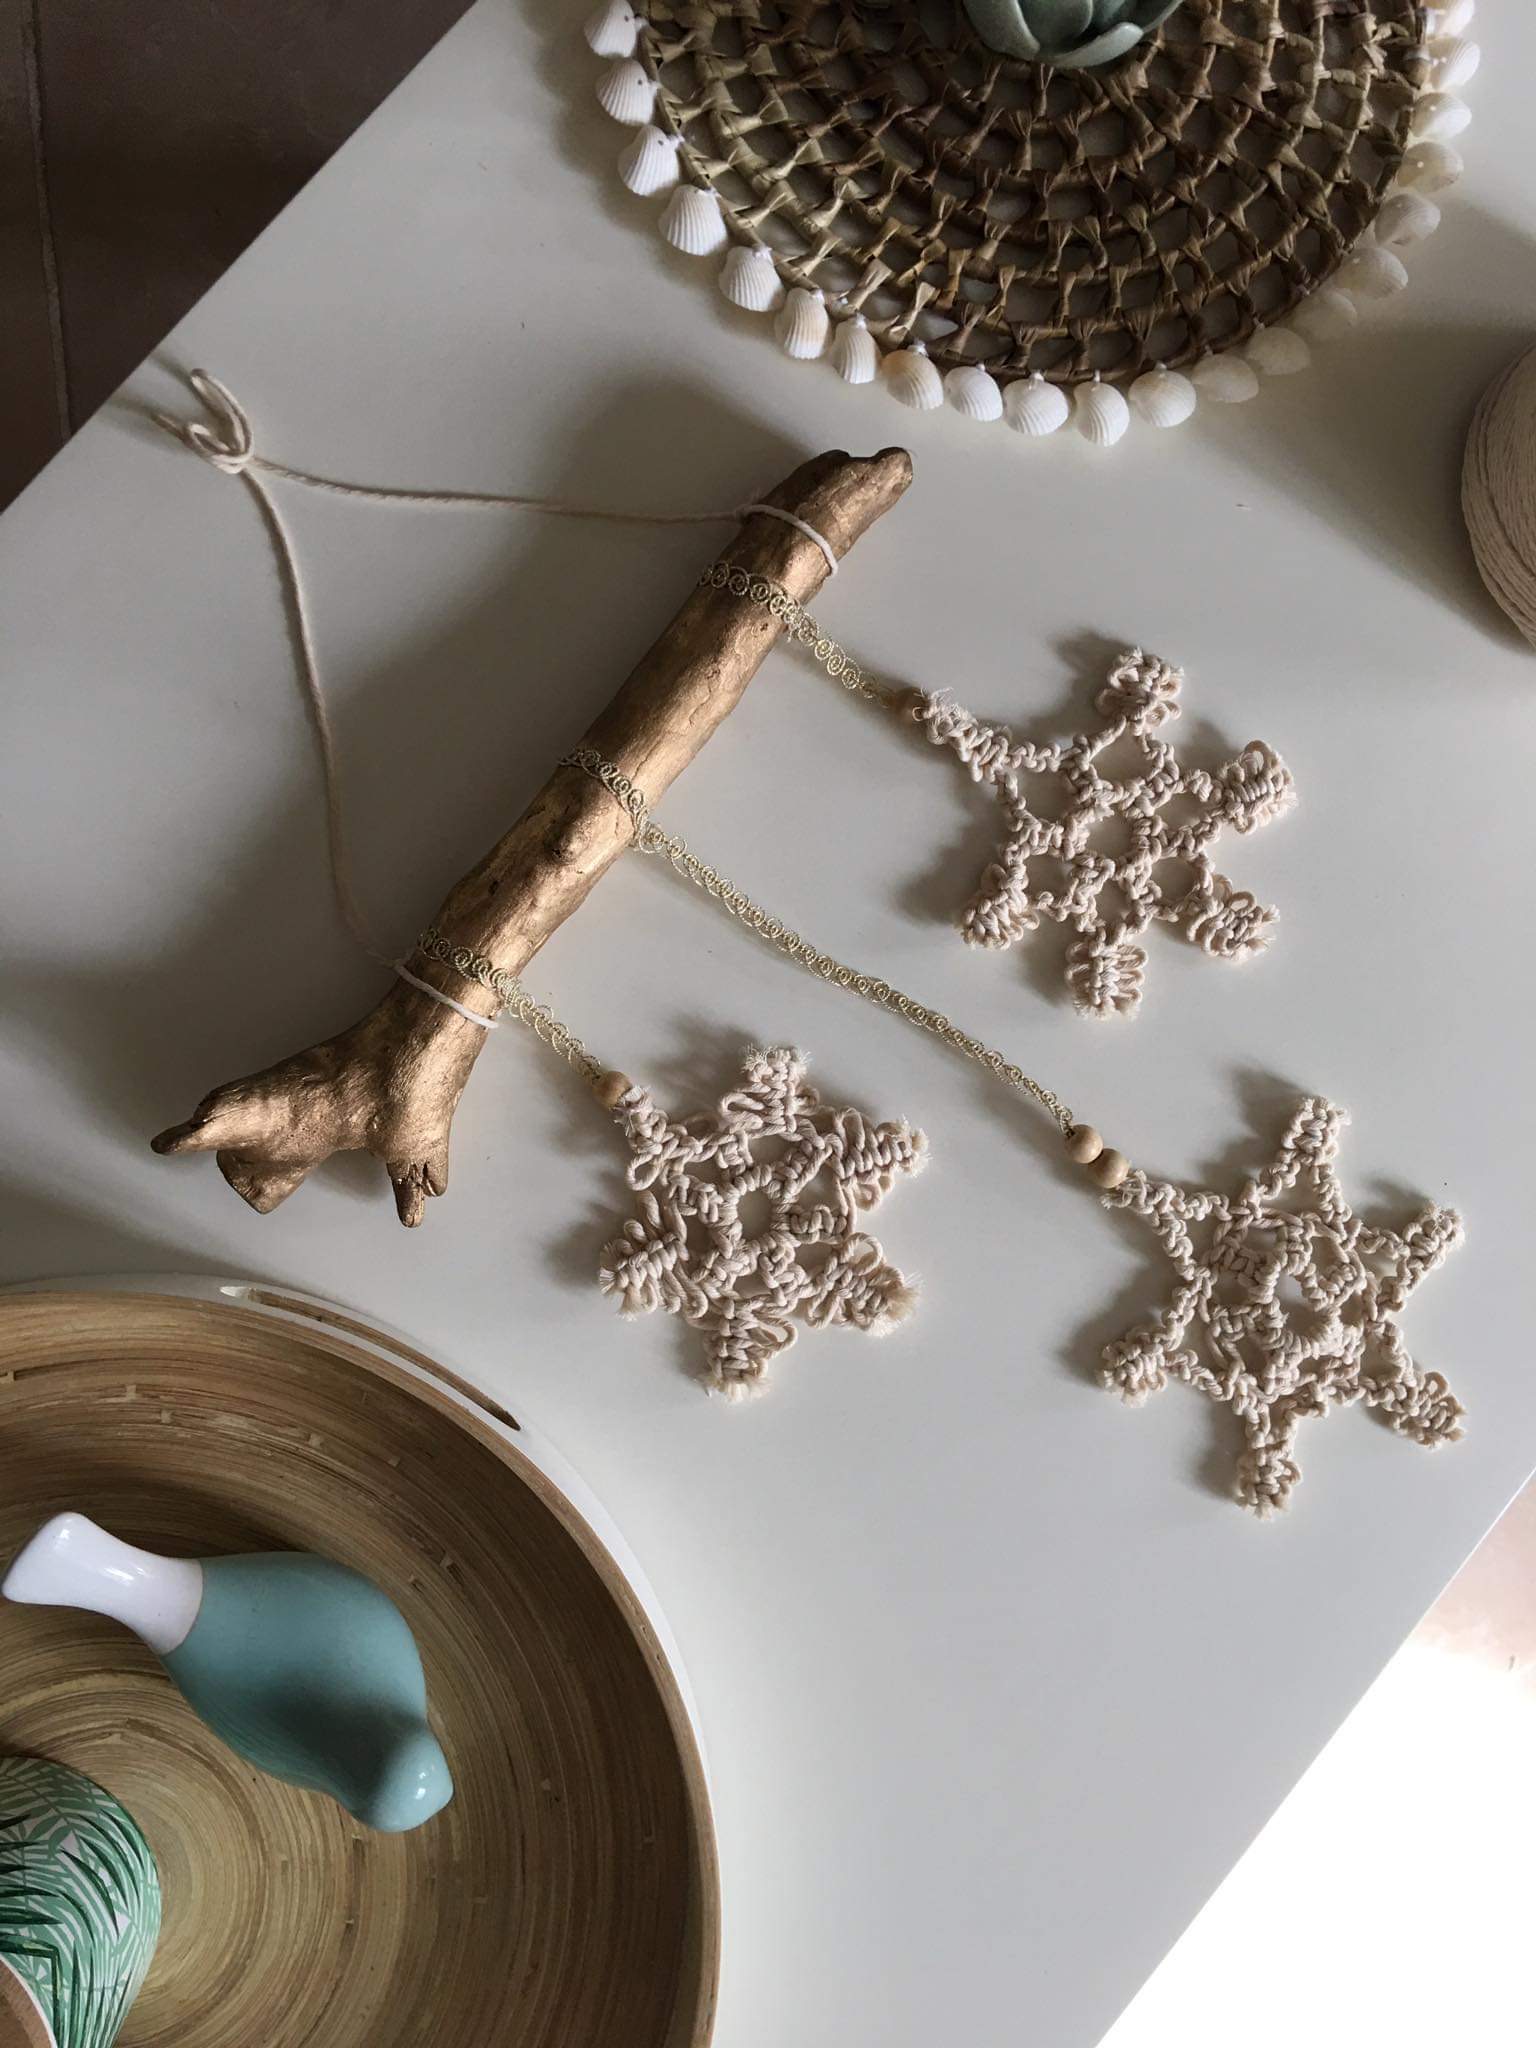 decoración y accesorios - Decoracion navideña en macramé